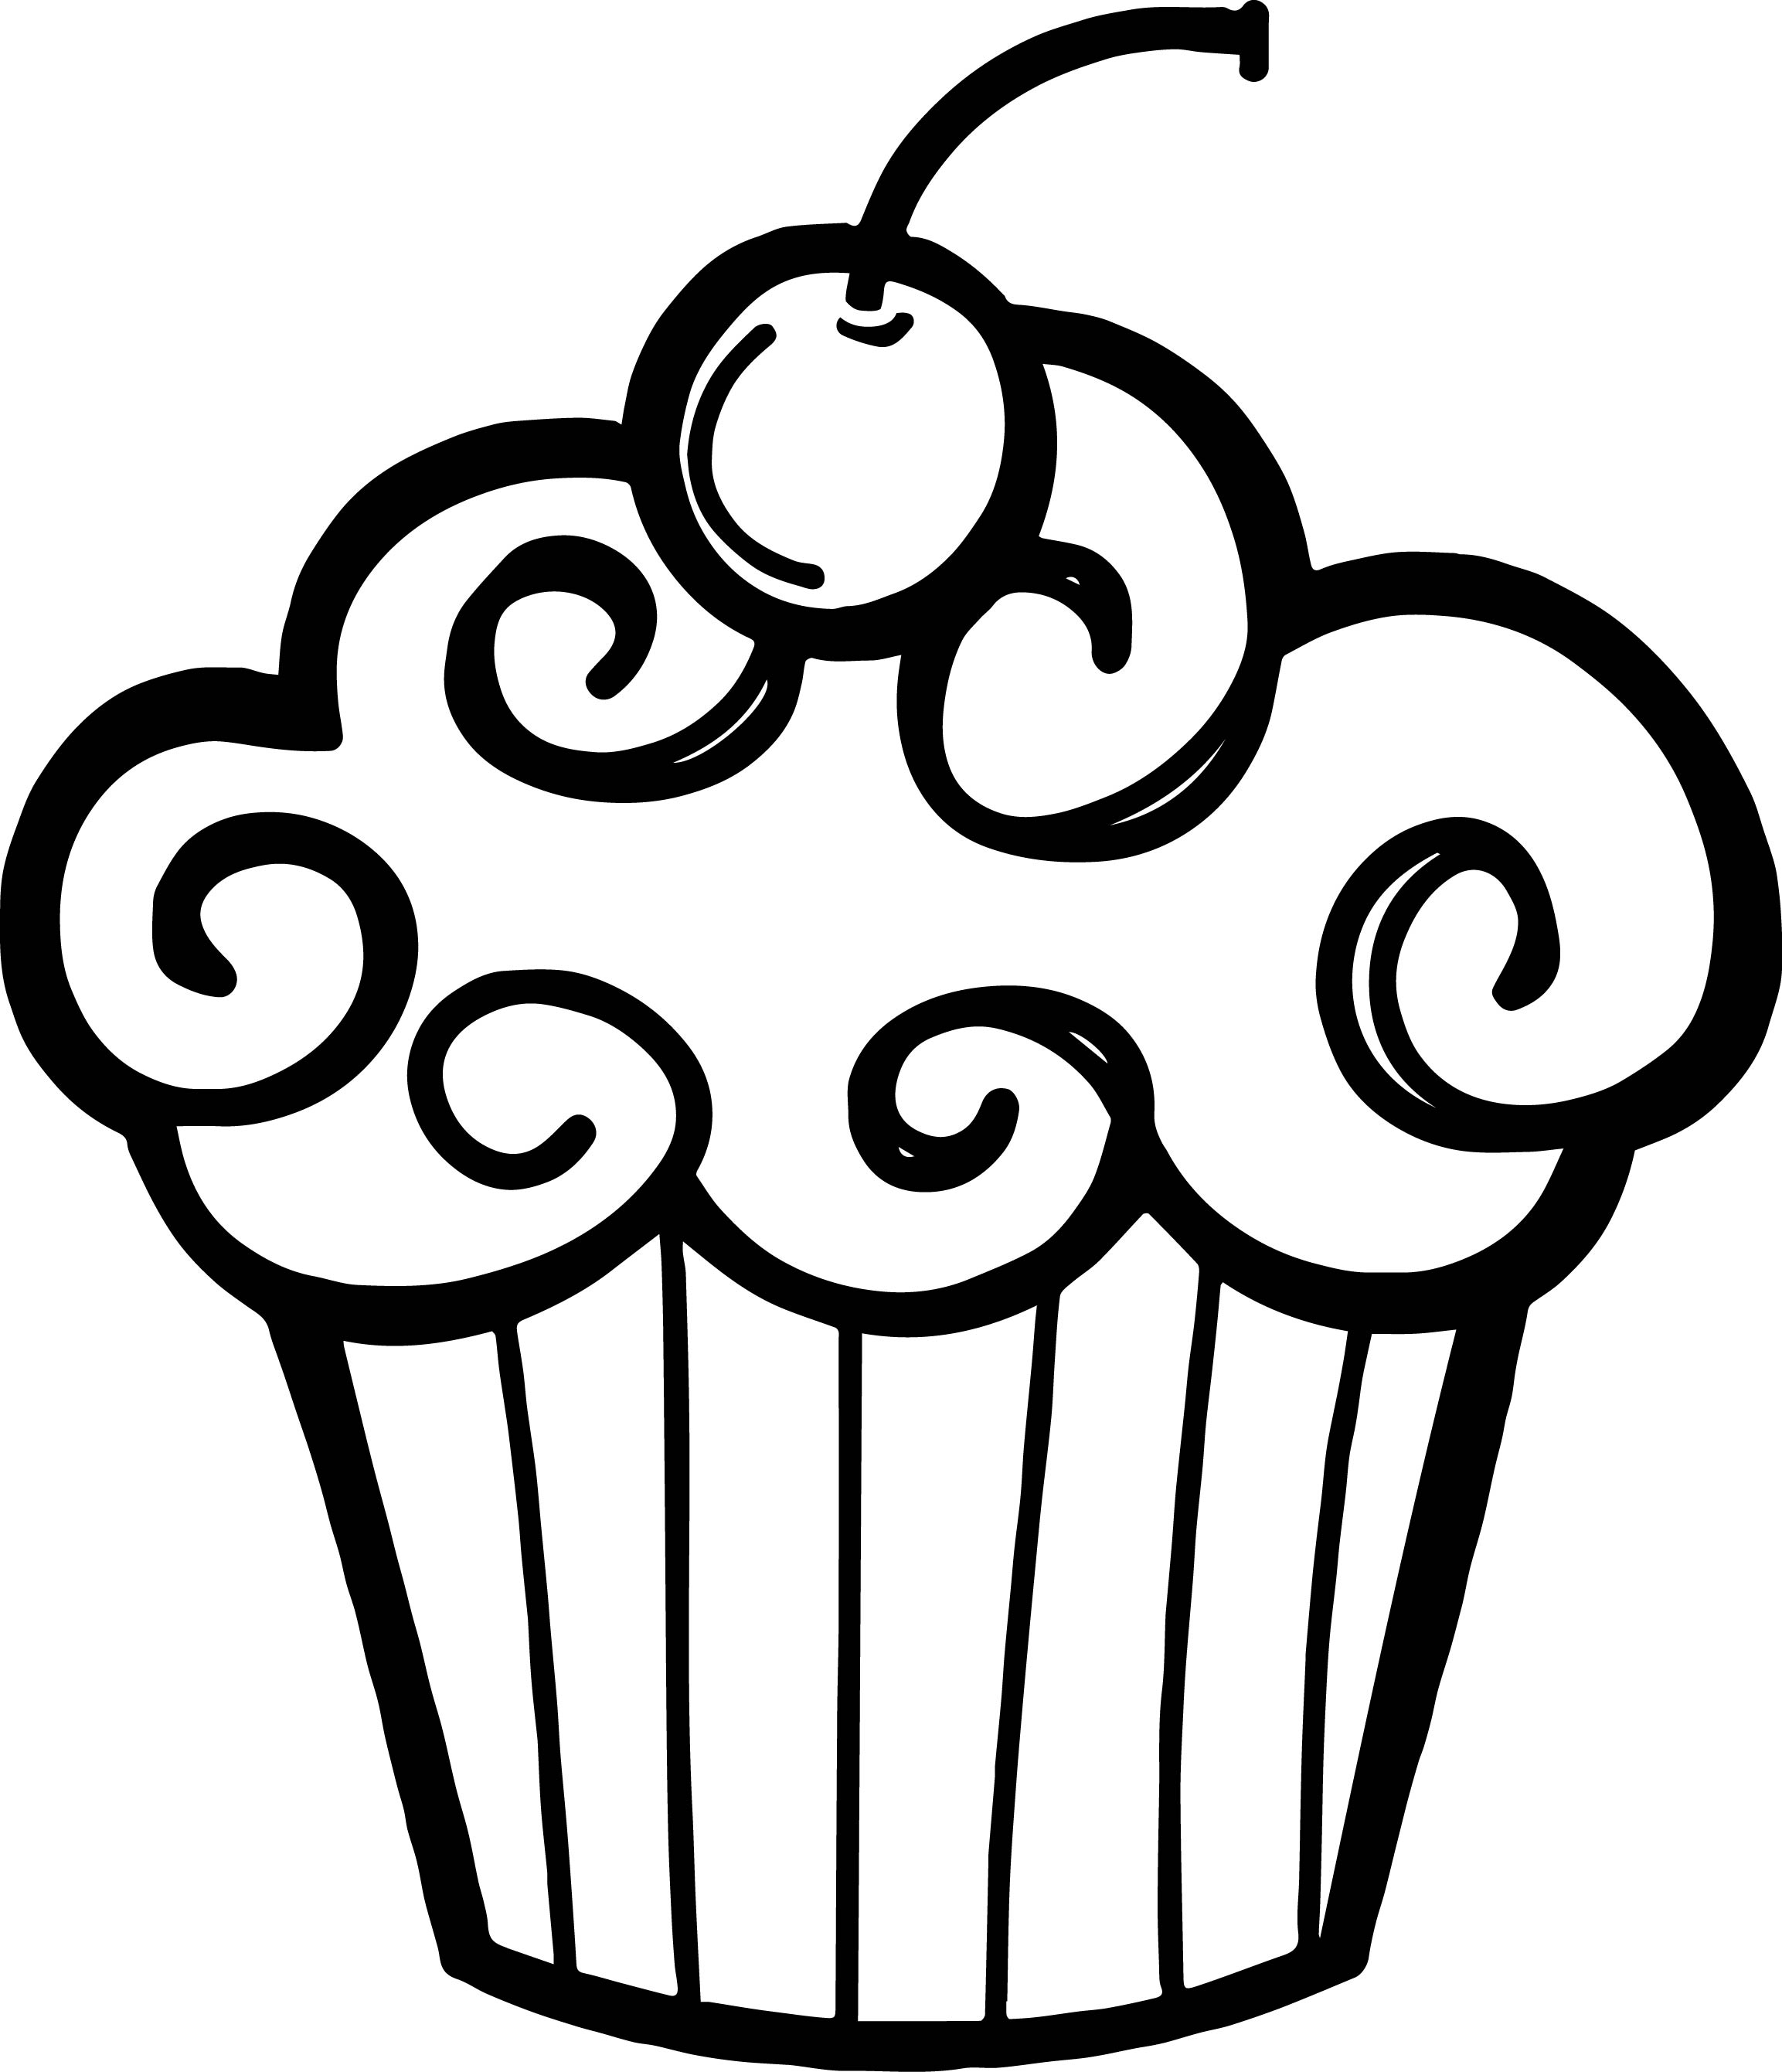 Clipart cupcake outline. Clip art gclipart com